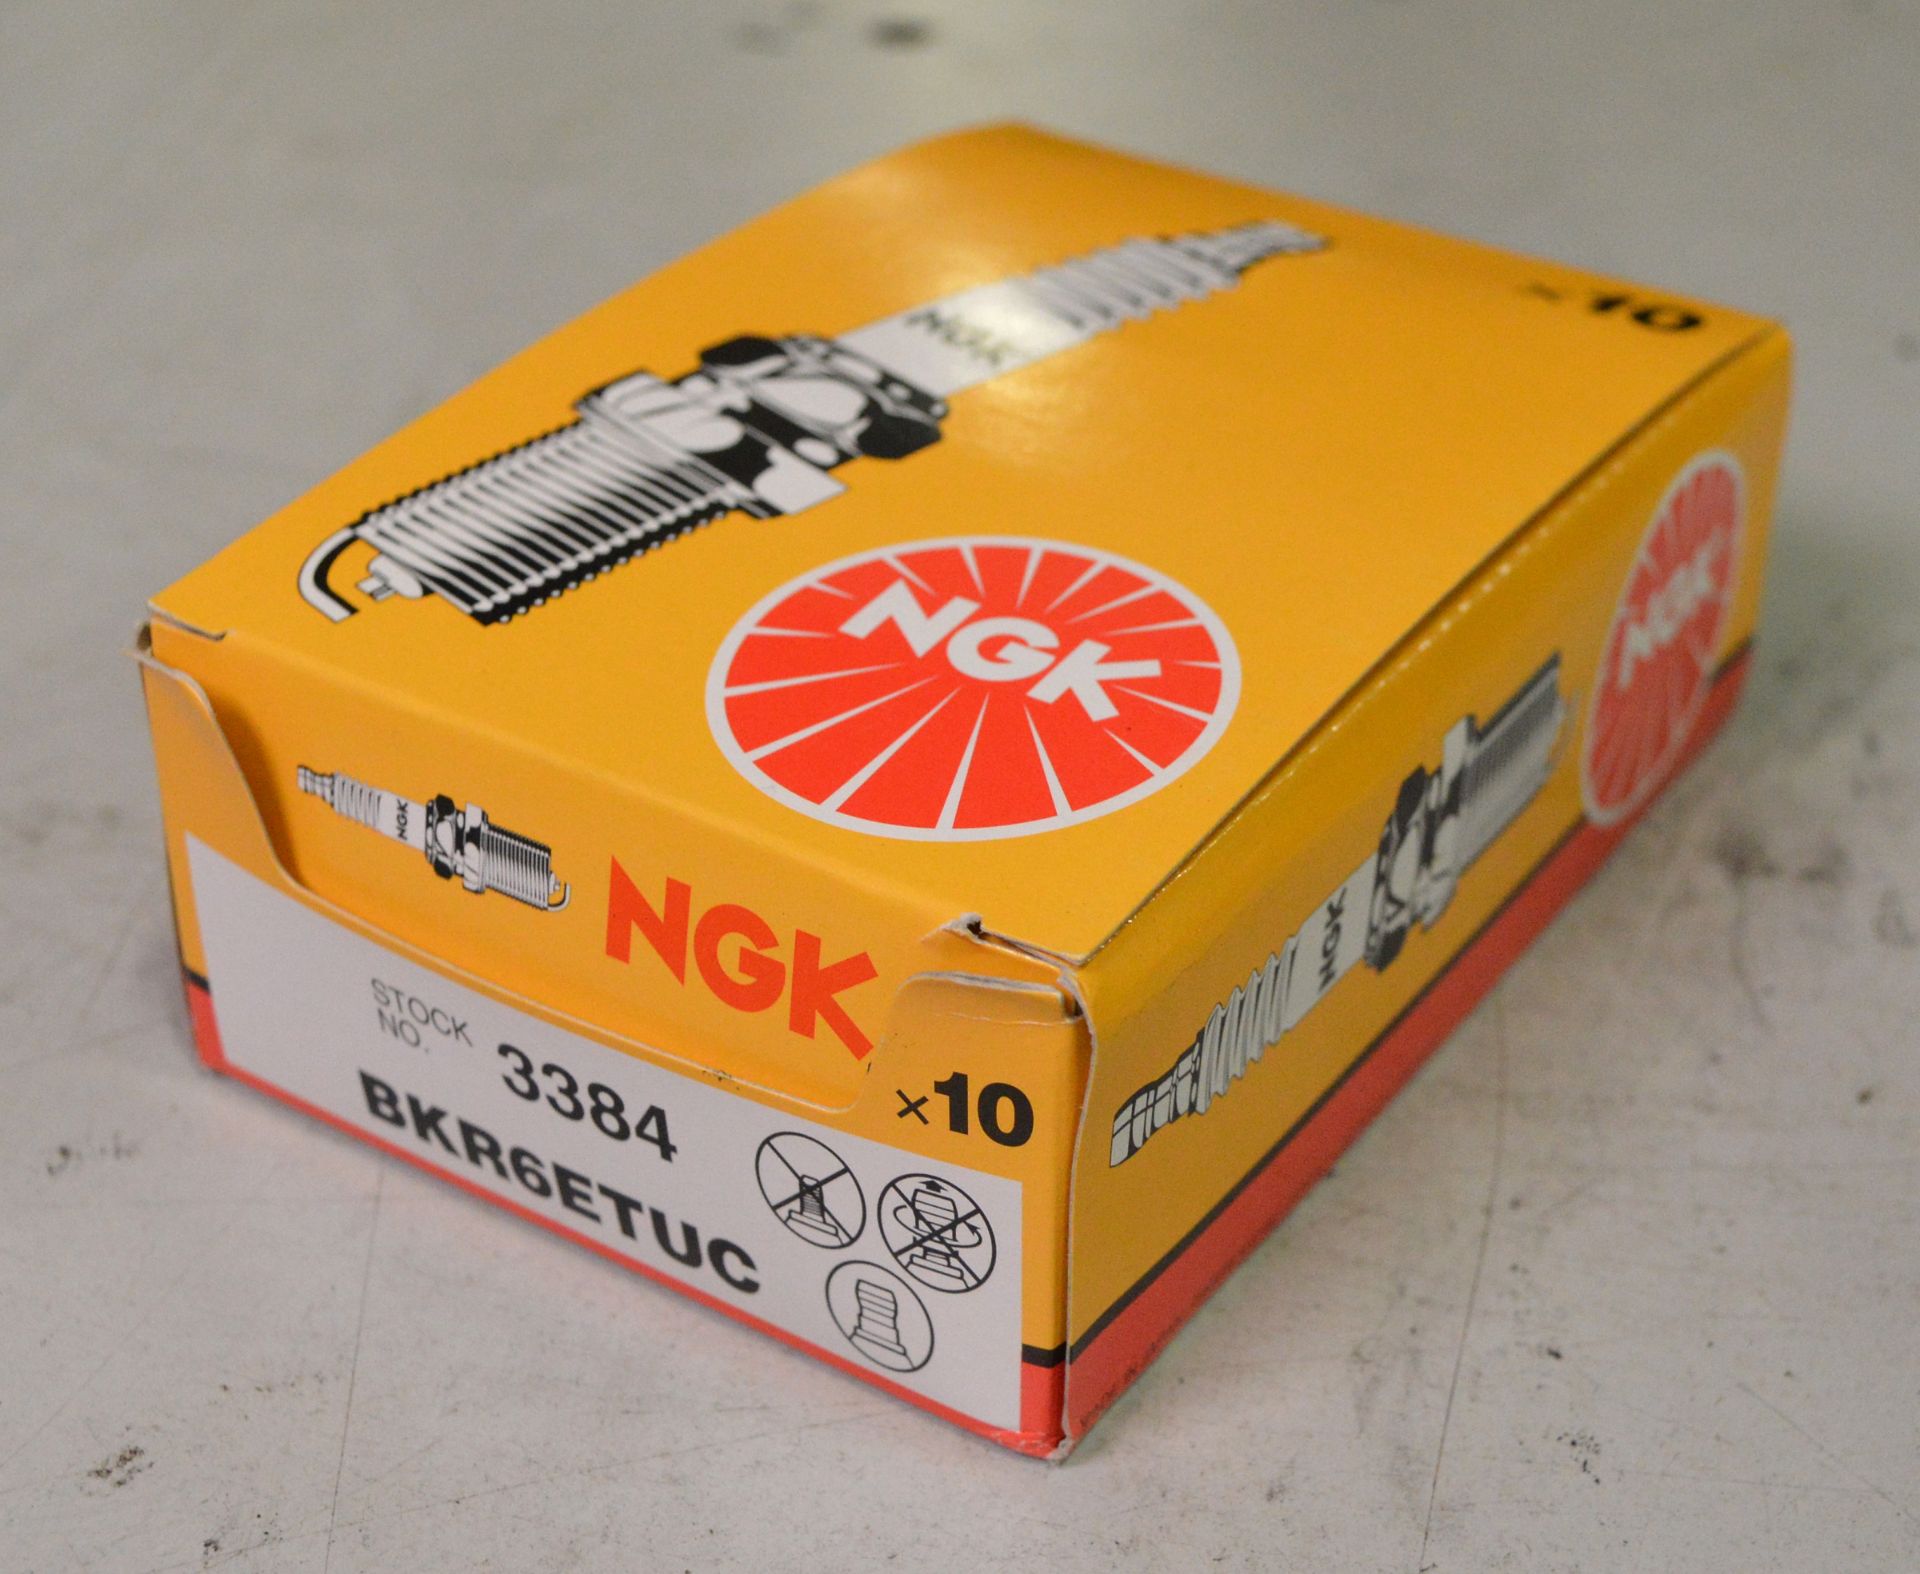 NGK spark plugs - 3384 - BKR6ETUC x10